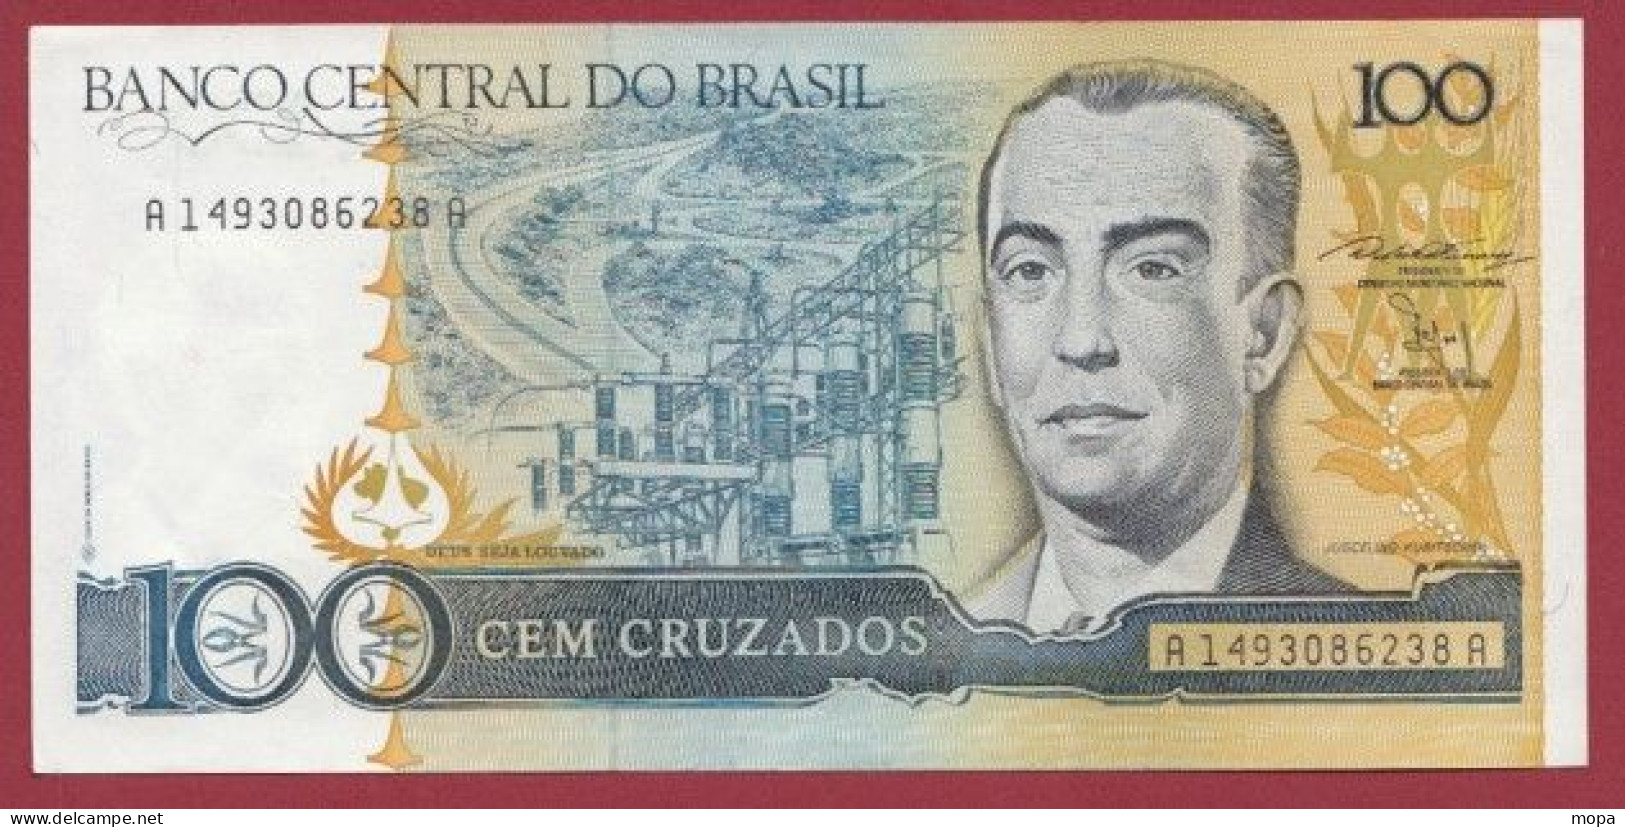 Brésil-- 100 Cruzeiros  --1987   ---UNC --(397) - Brazil